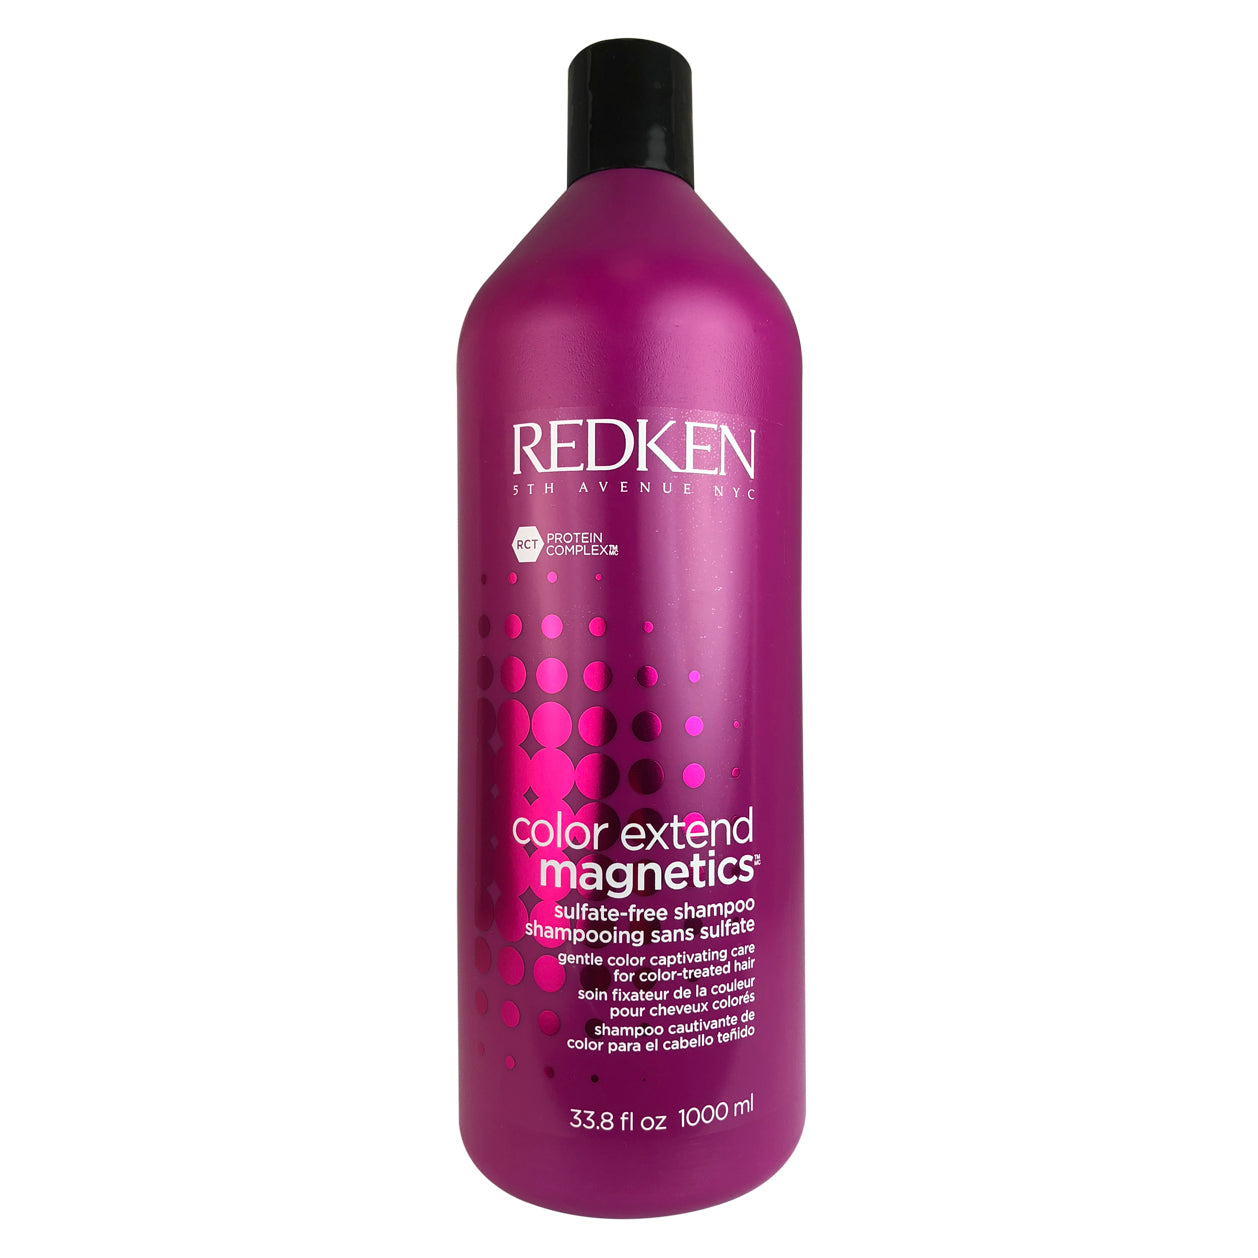 Redken Color Extend Magnetics Shampoo 1 Liter